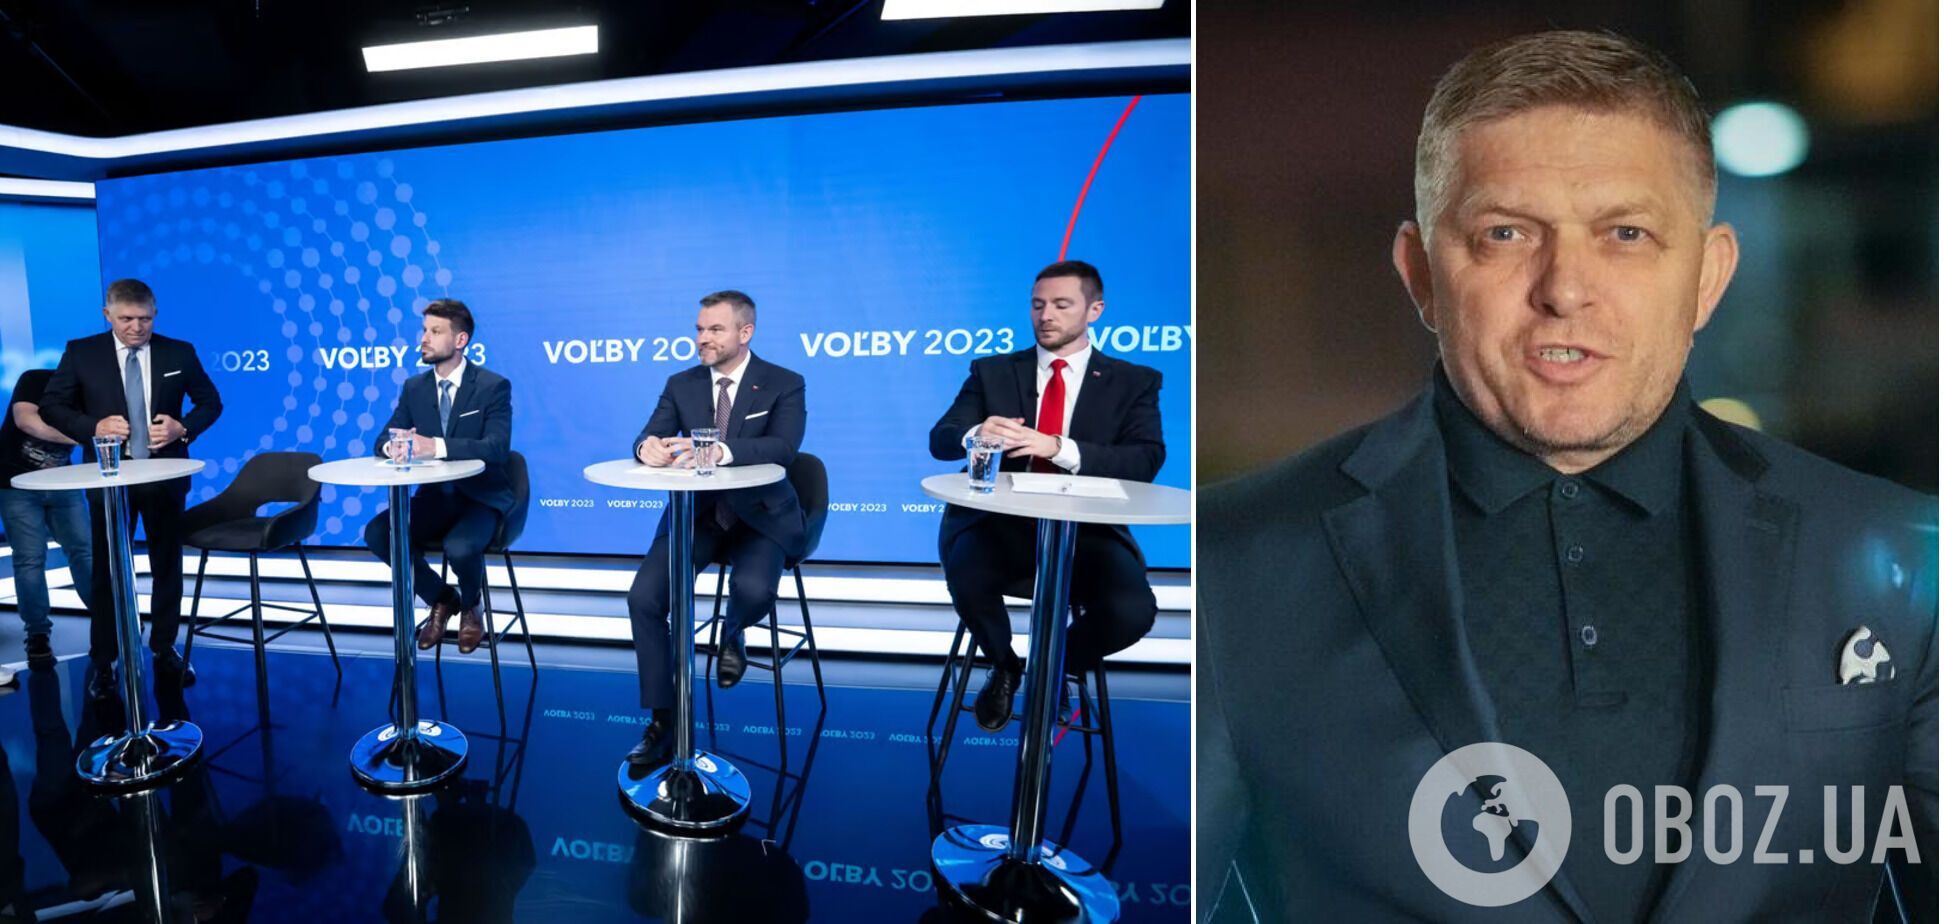 Пророссийская партия Smer побеждает на выборах в Словакии: ее лидер против помощи Украине